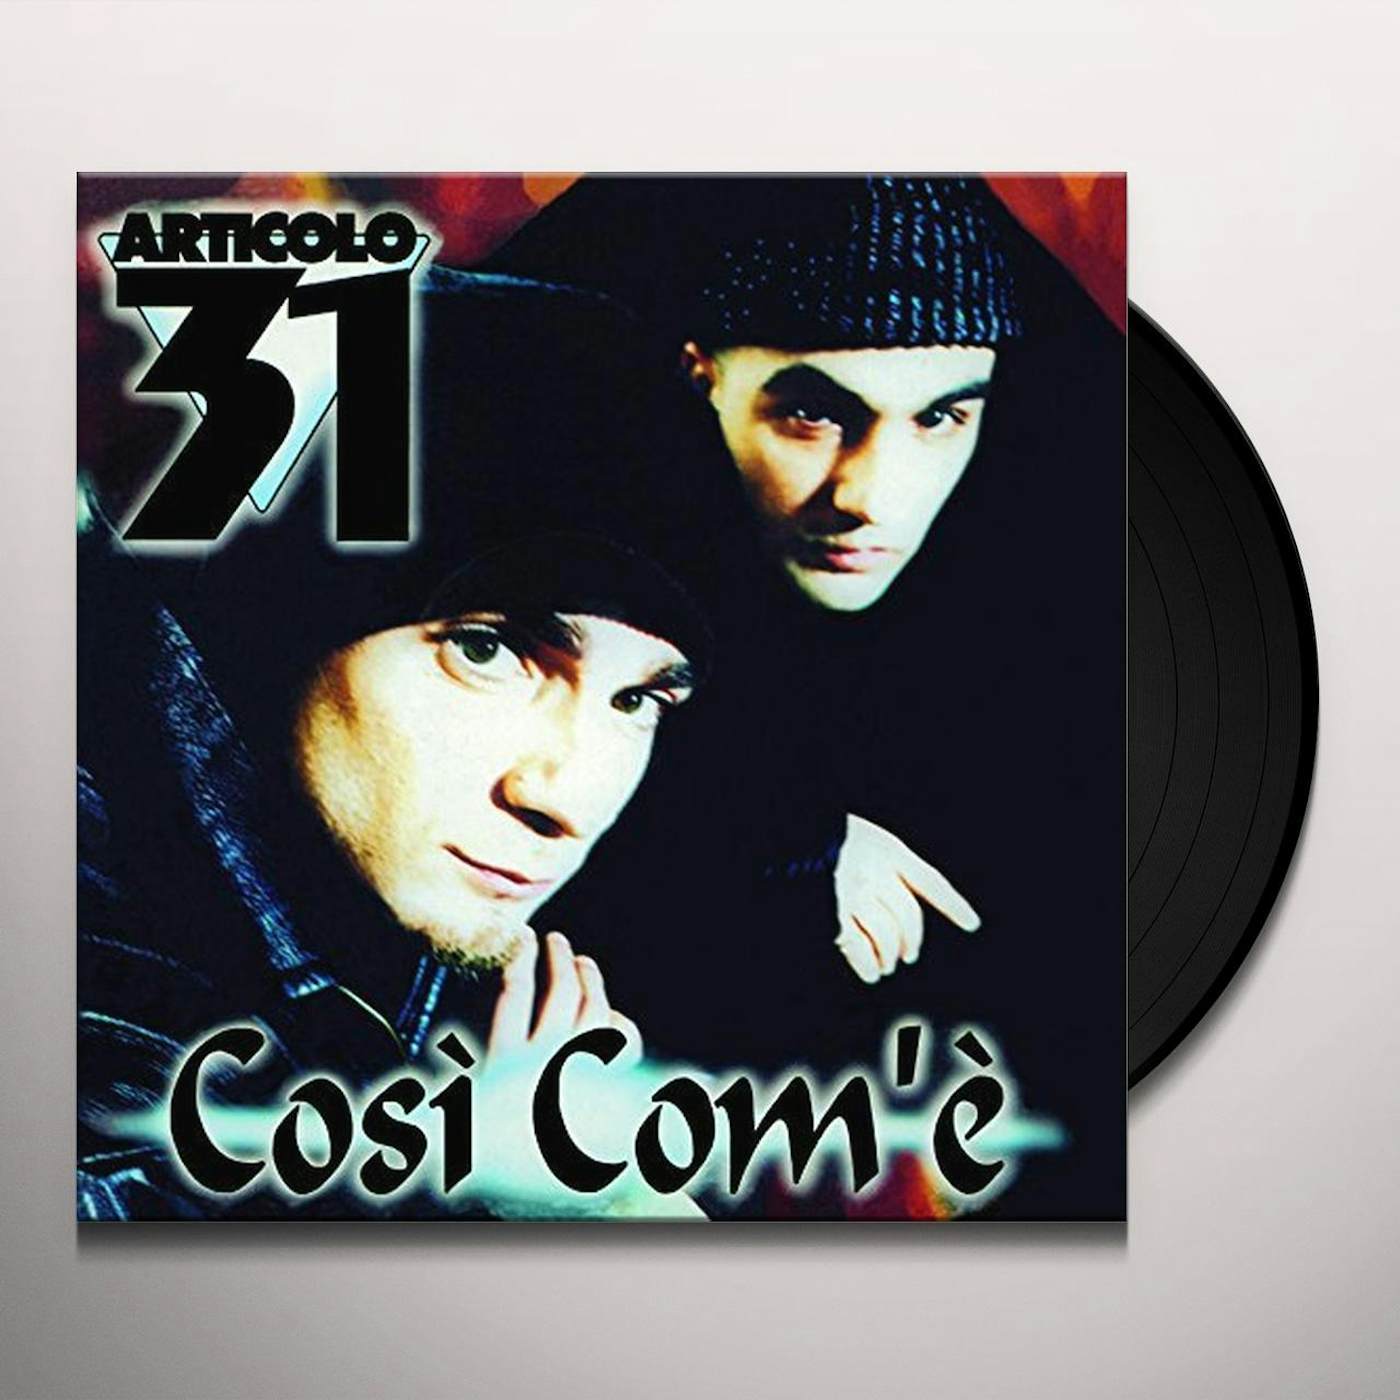 Articolo 31 COSI COM'E' Vinyl Record